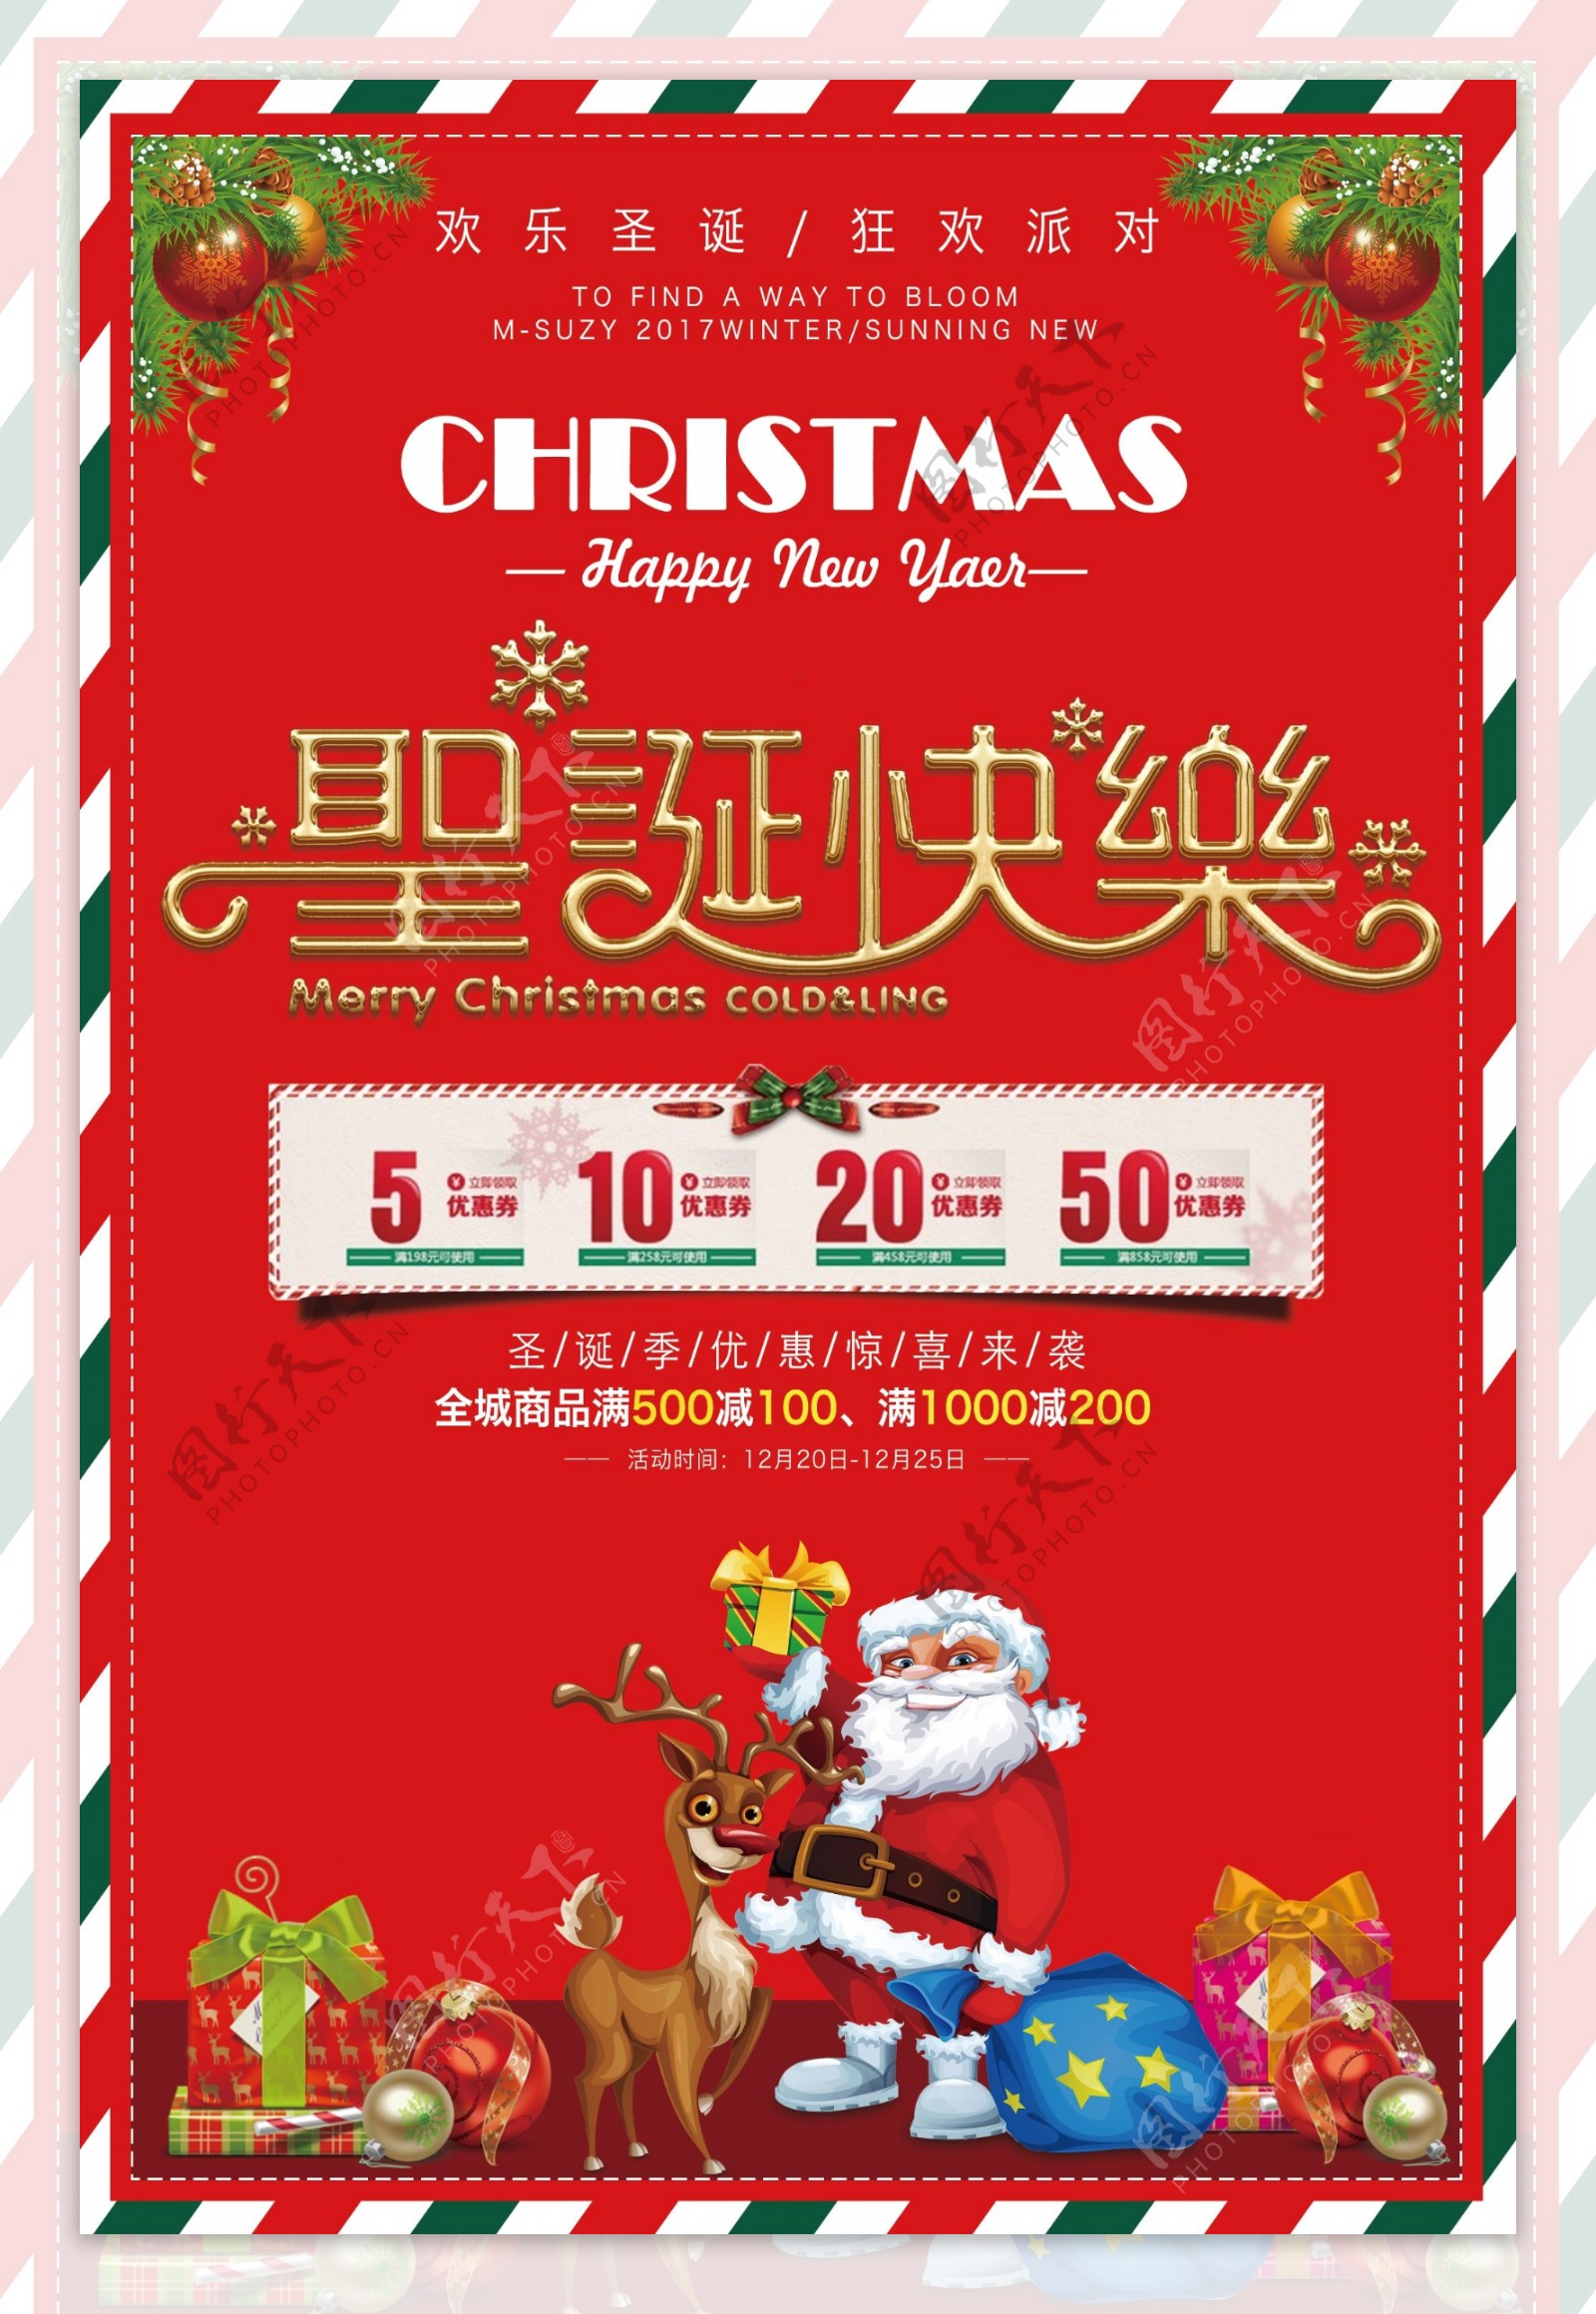 2017红色背景圣诞快乐促销活动海报设计